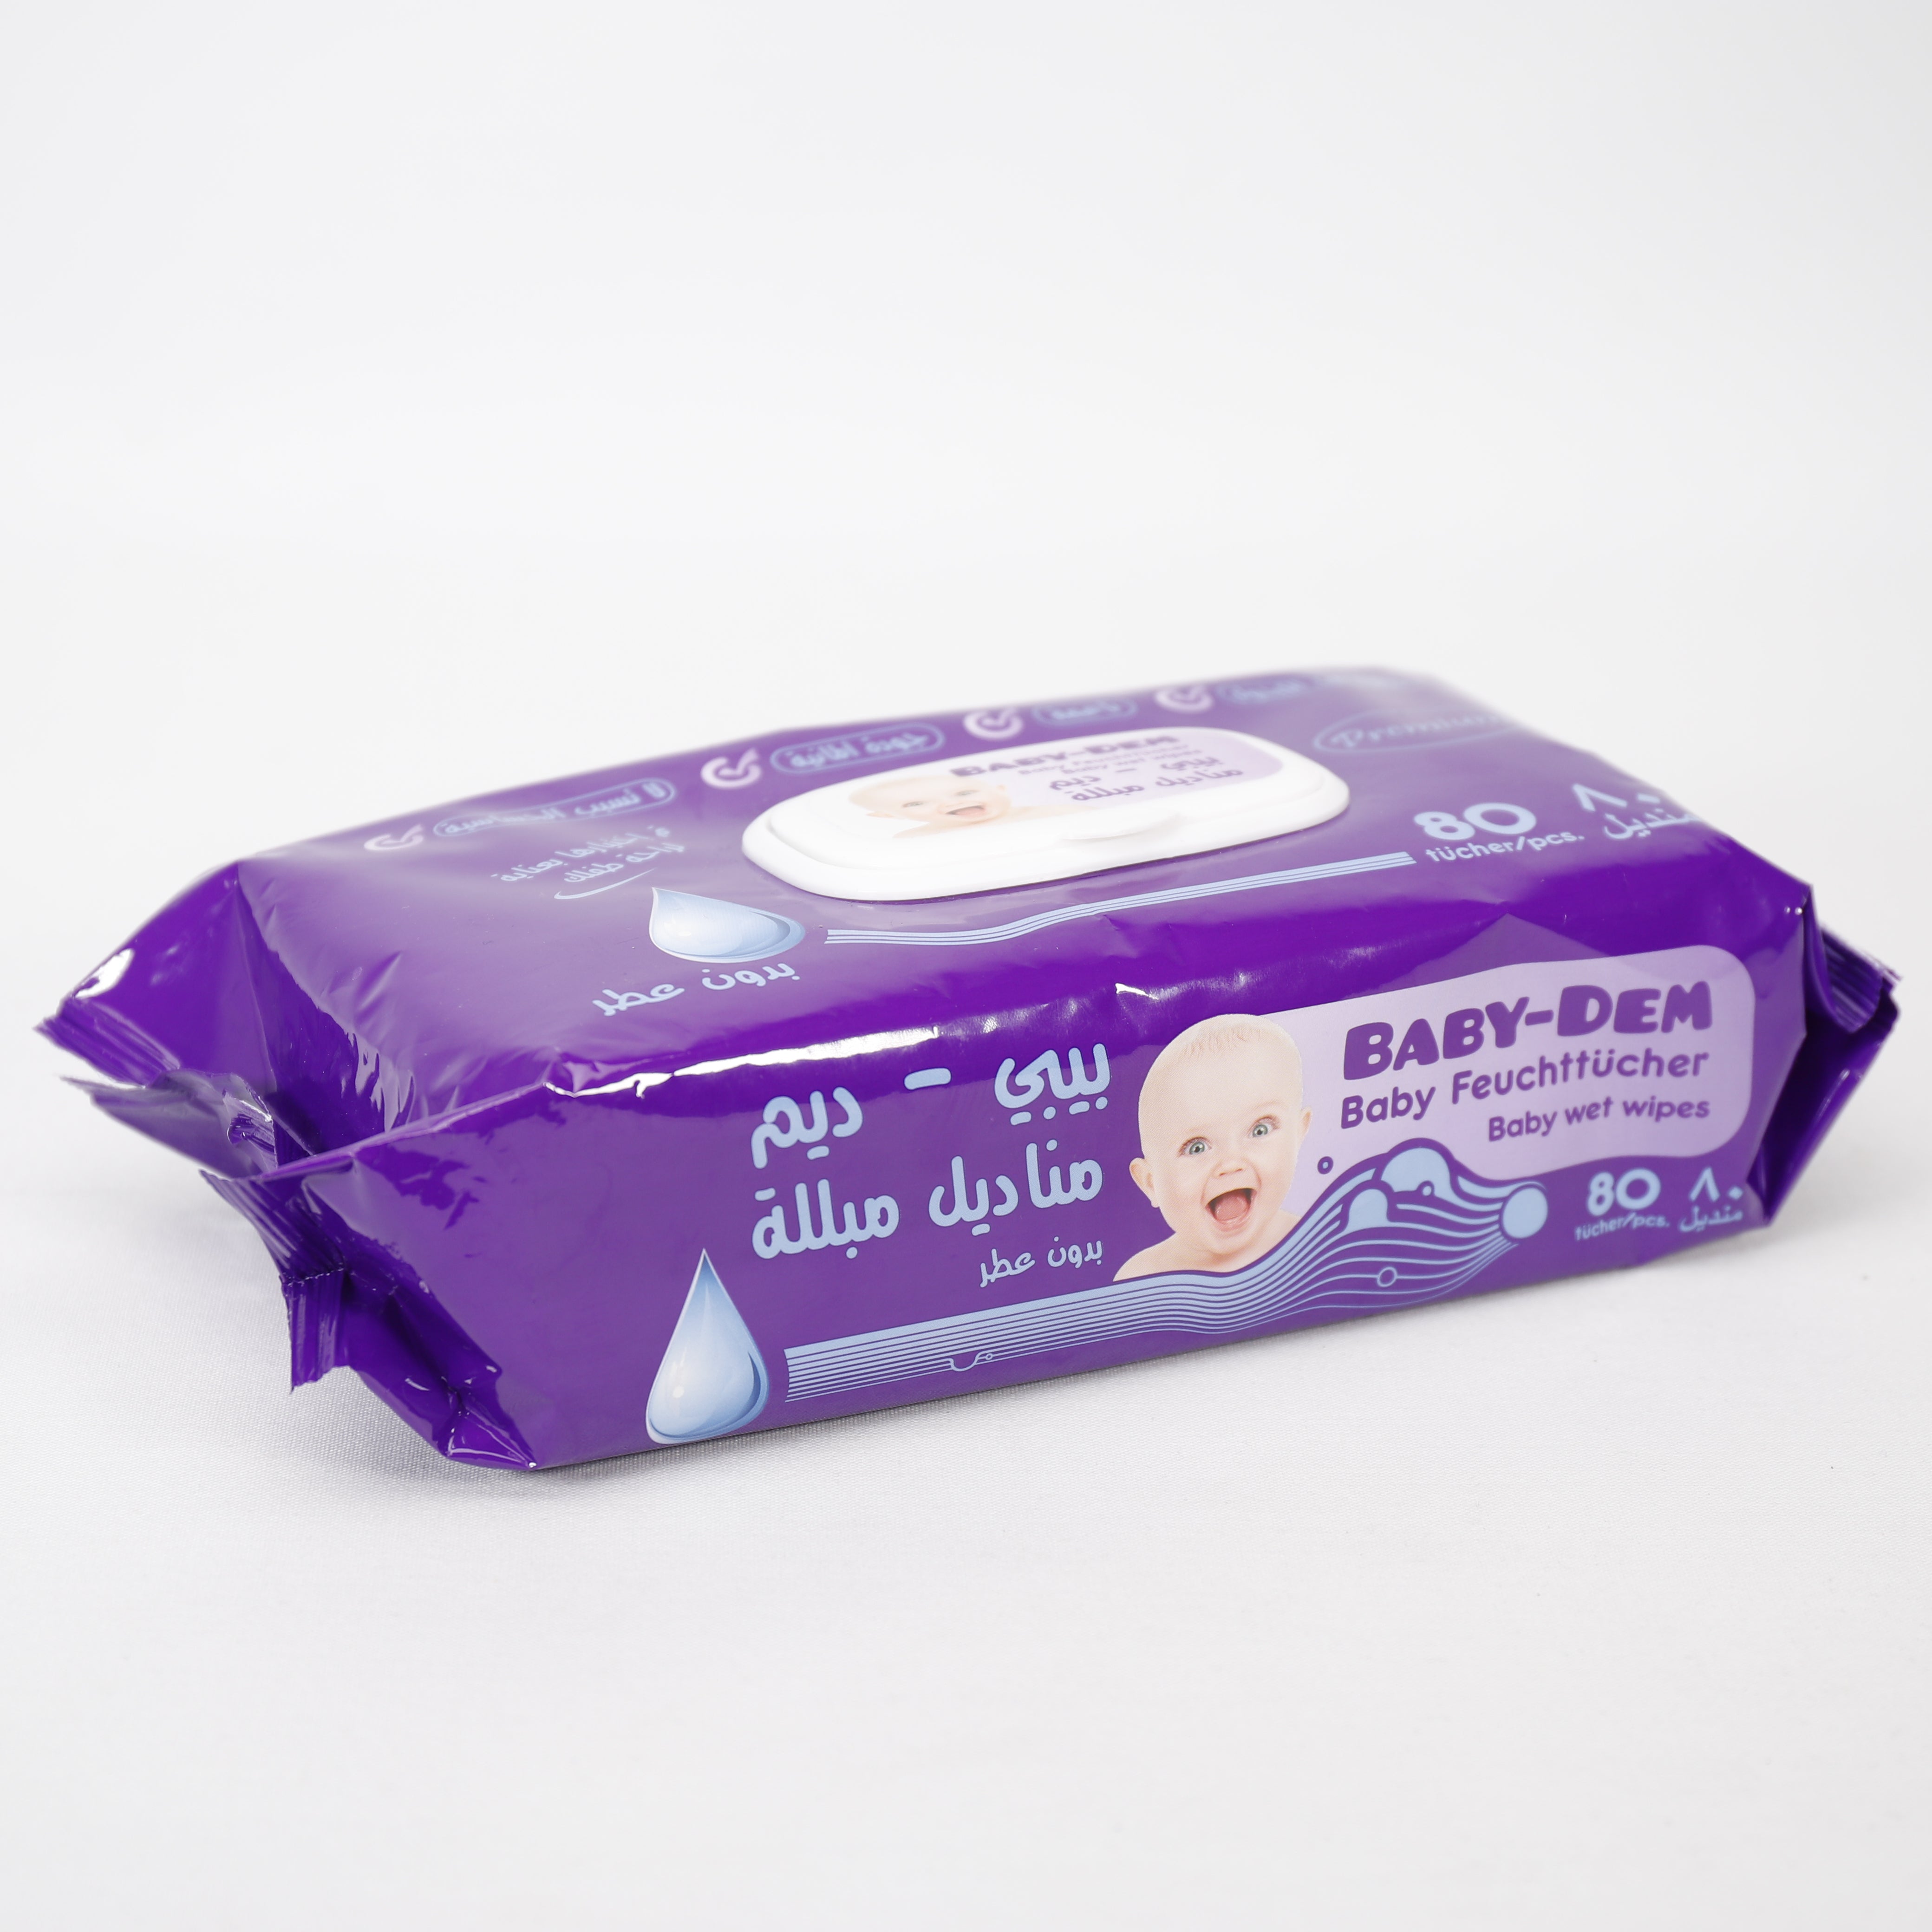 Baby Dem, Premium Sensitive Feuchttücher, 80 Stk., Saugfähige & Weiche, Ohne Duft